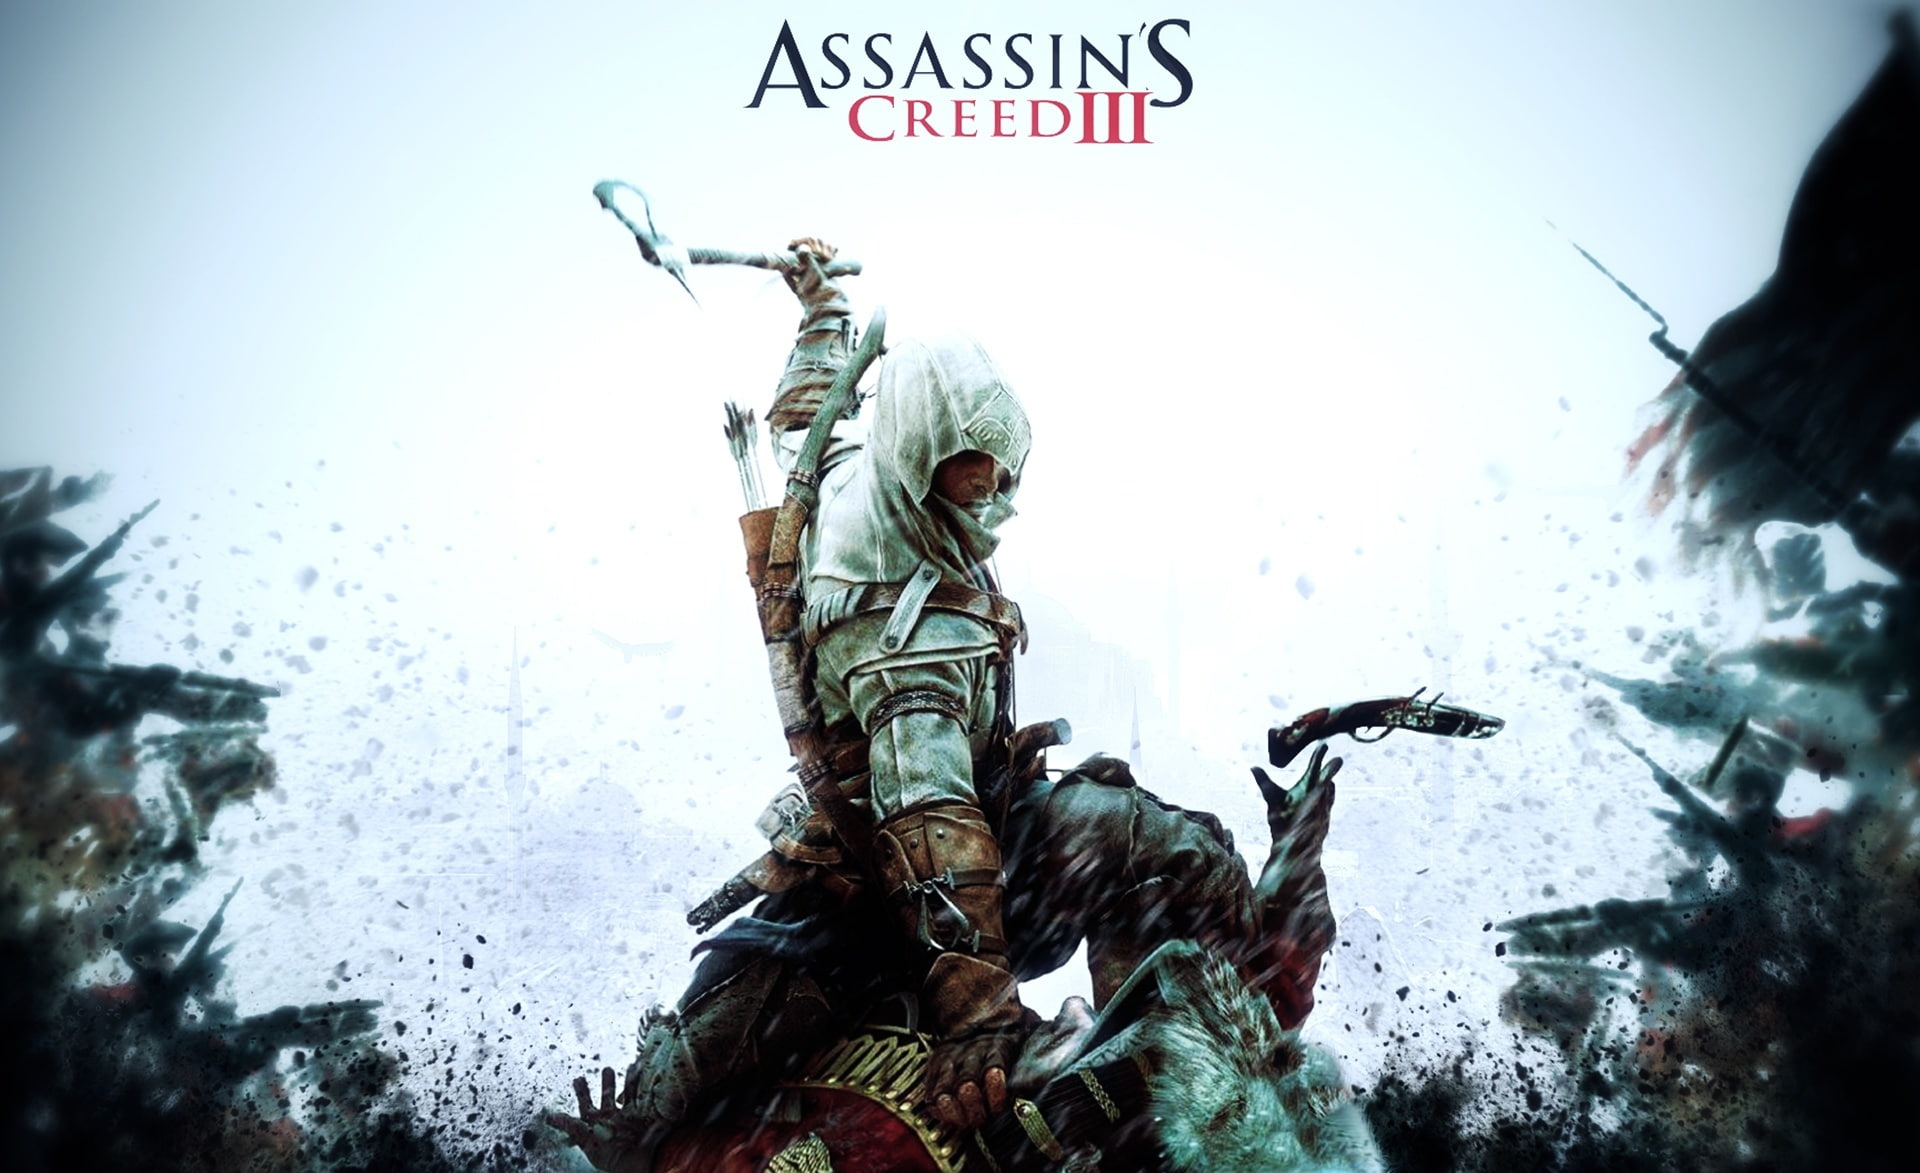 ACIII-6, Assassin's Creed III wallpaper, Games, Battlefield, video game